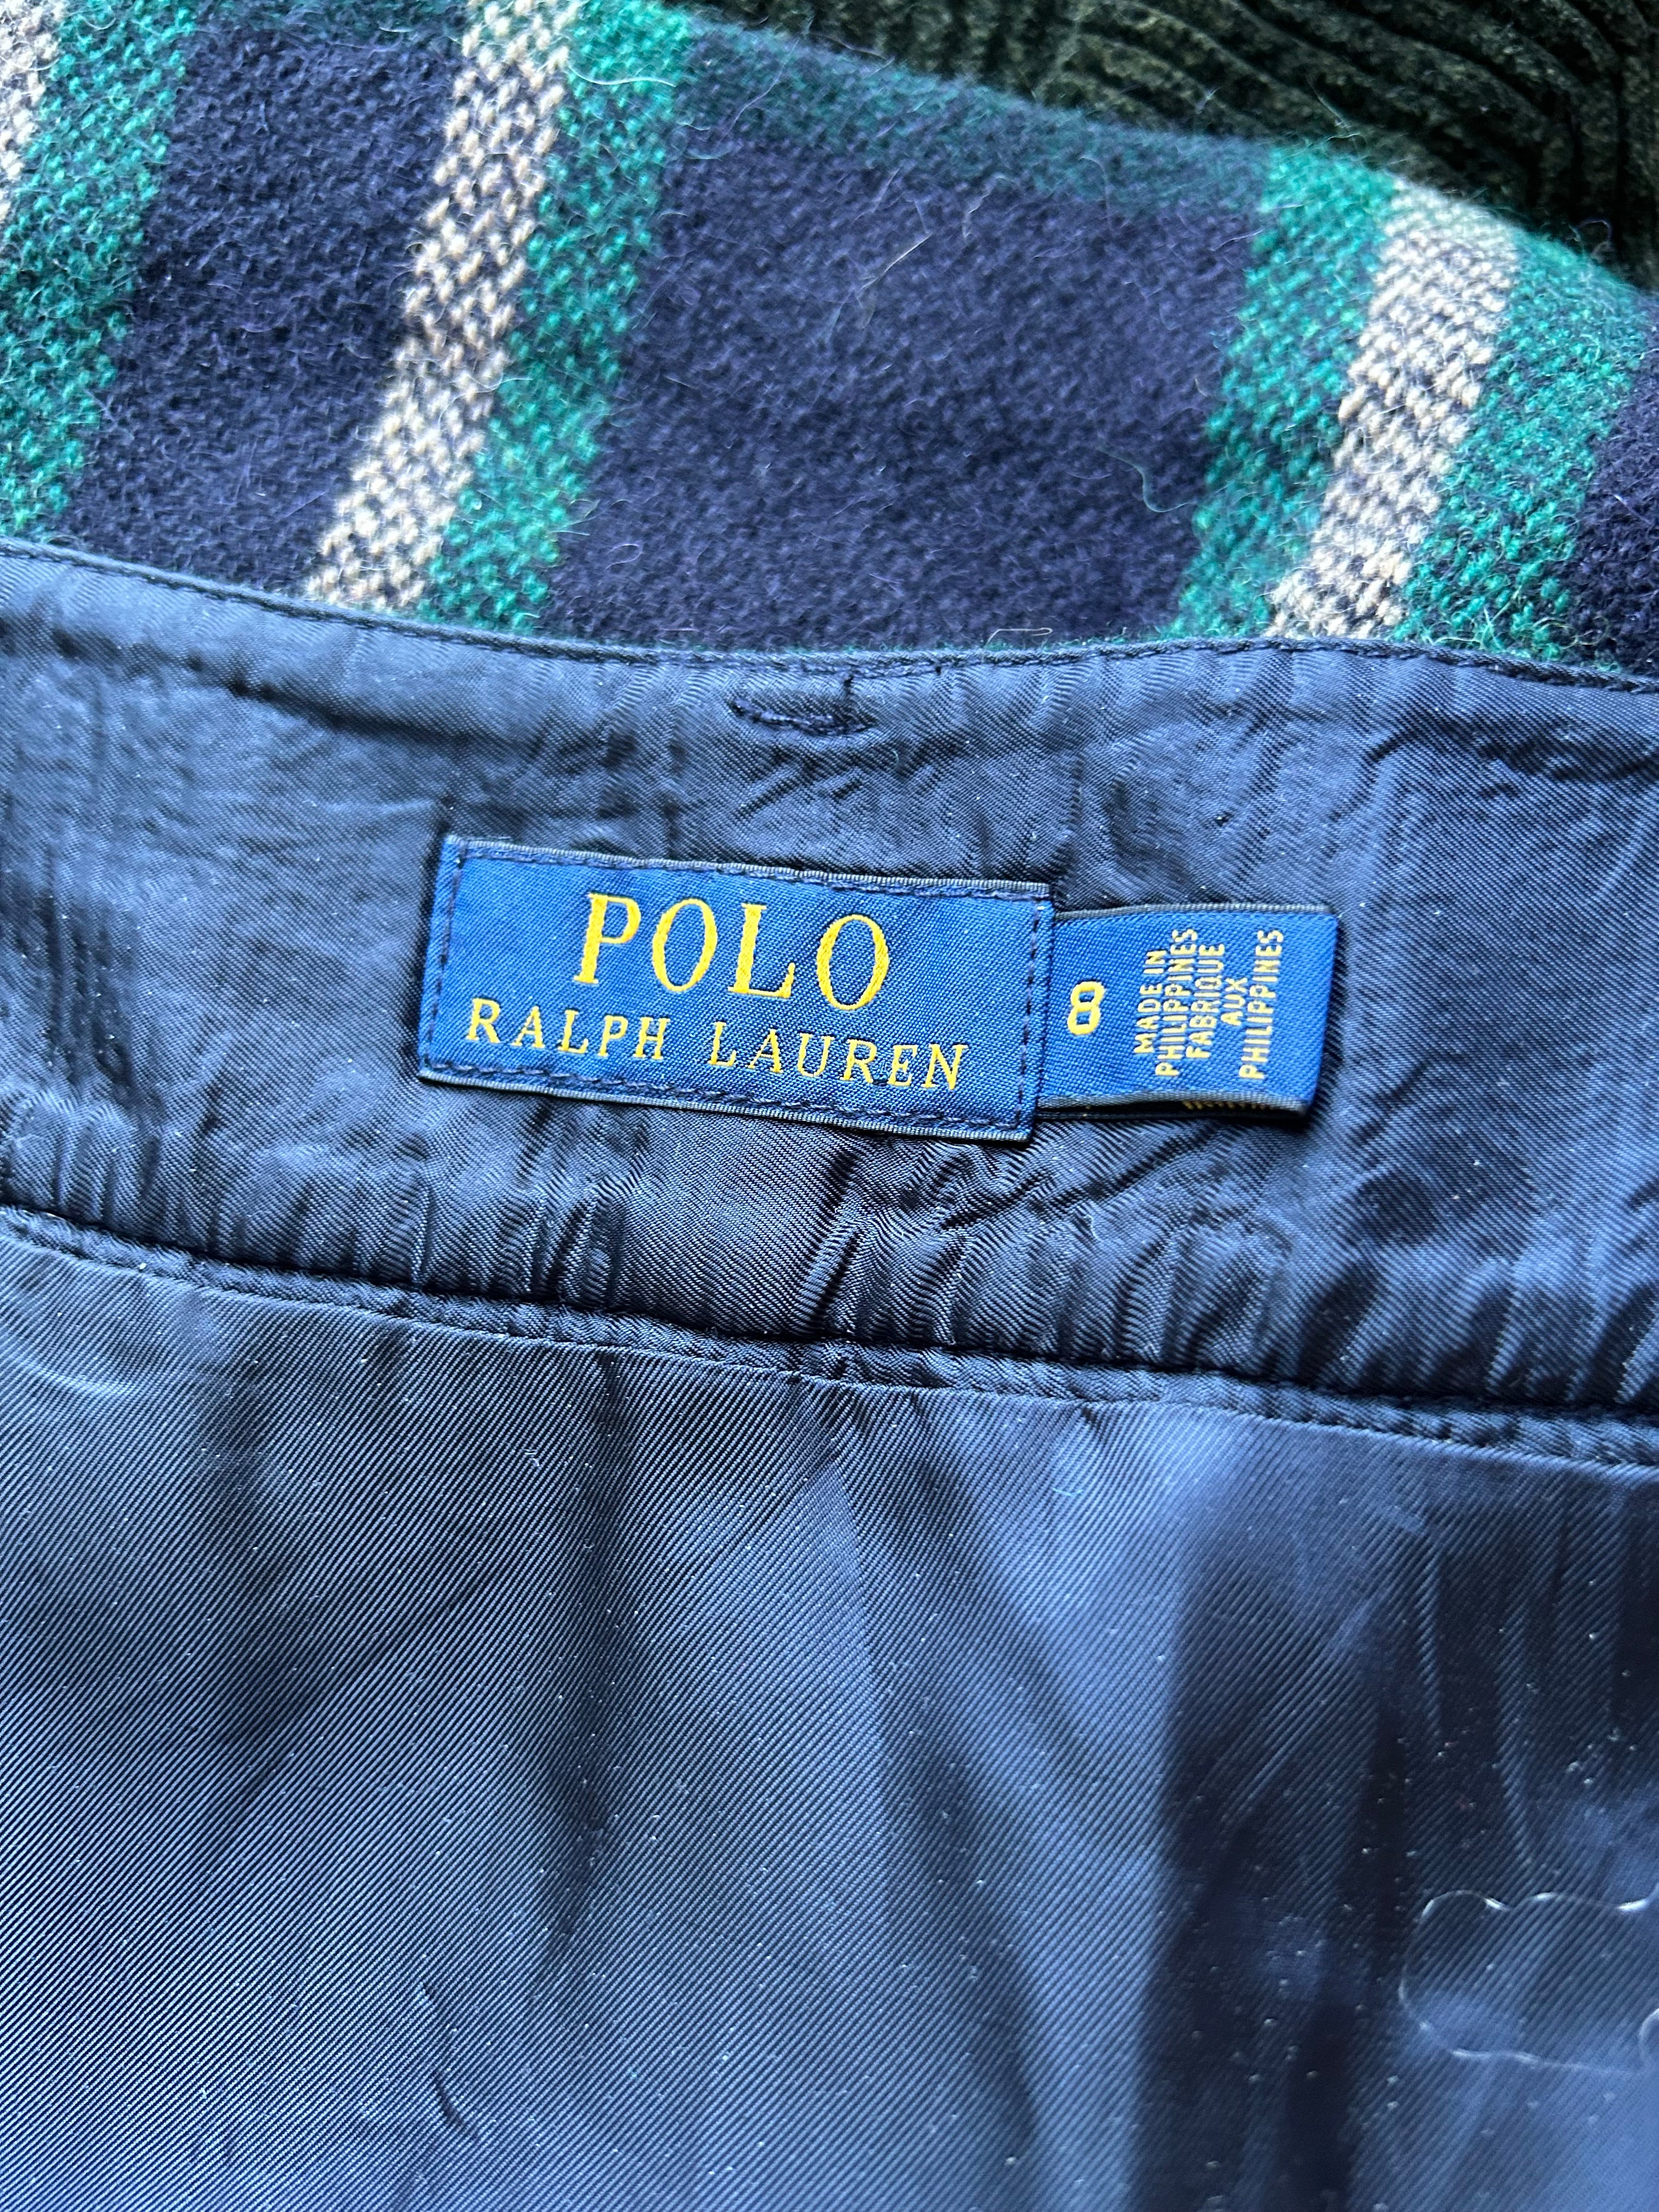 Polo Ralph Lauren Plaid Skirt, Wool Alpaca Blend, 34” Waist